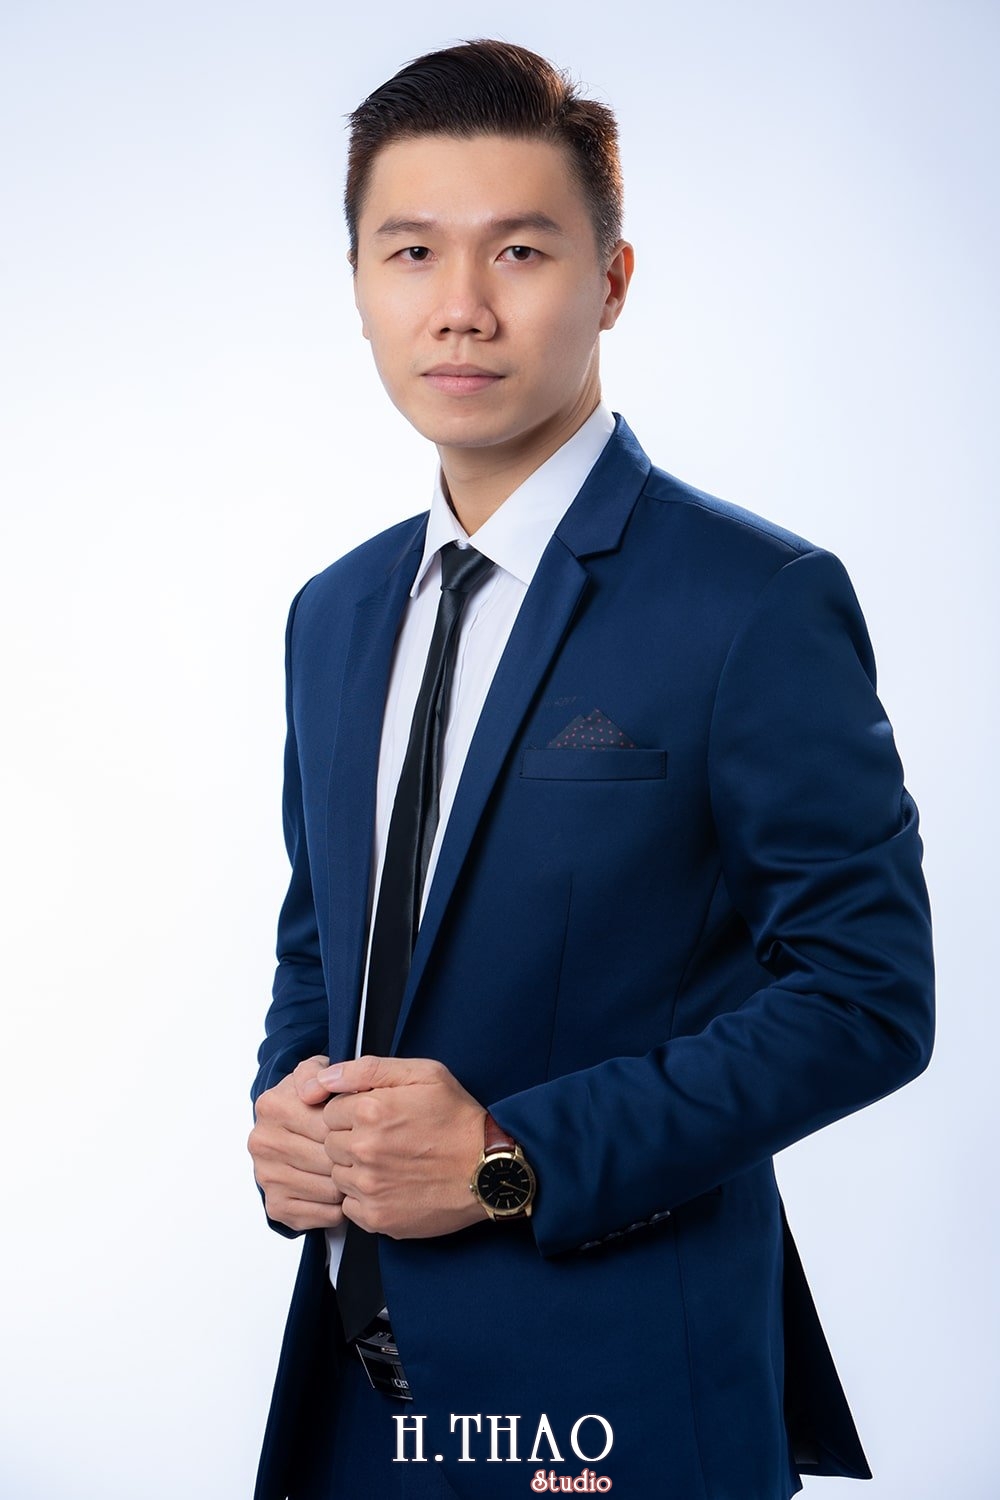 anh profile ca nhan nam 3 - HThao Studio - Chuyên chụp hình chân dung doanh nhân đẹp ở Tp.HCM